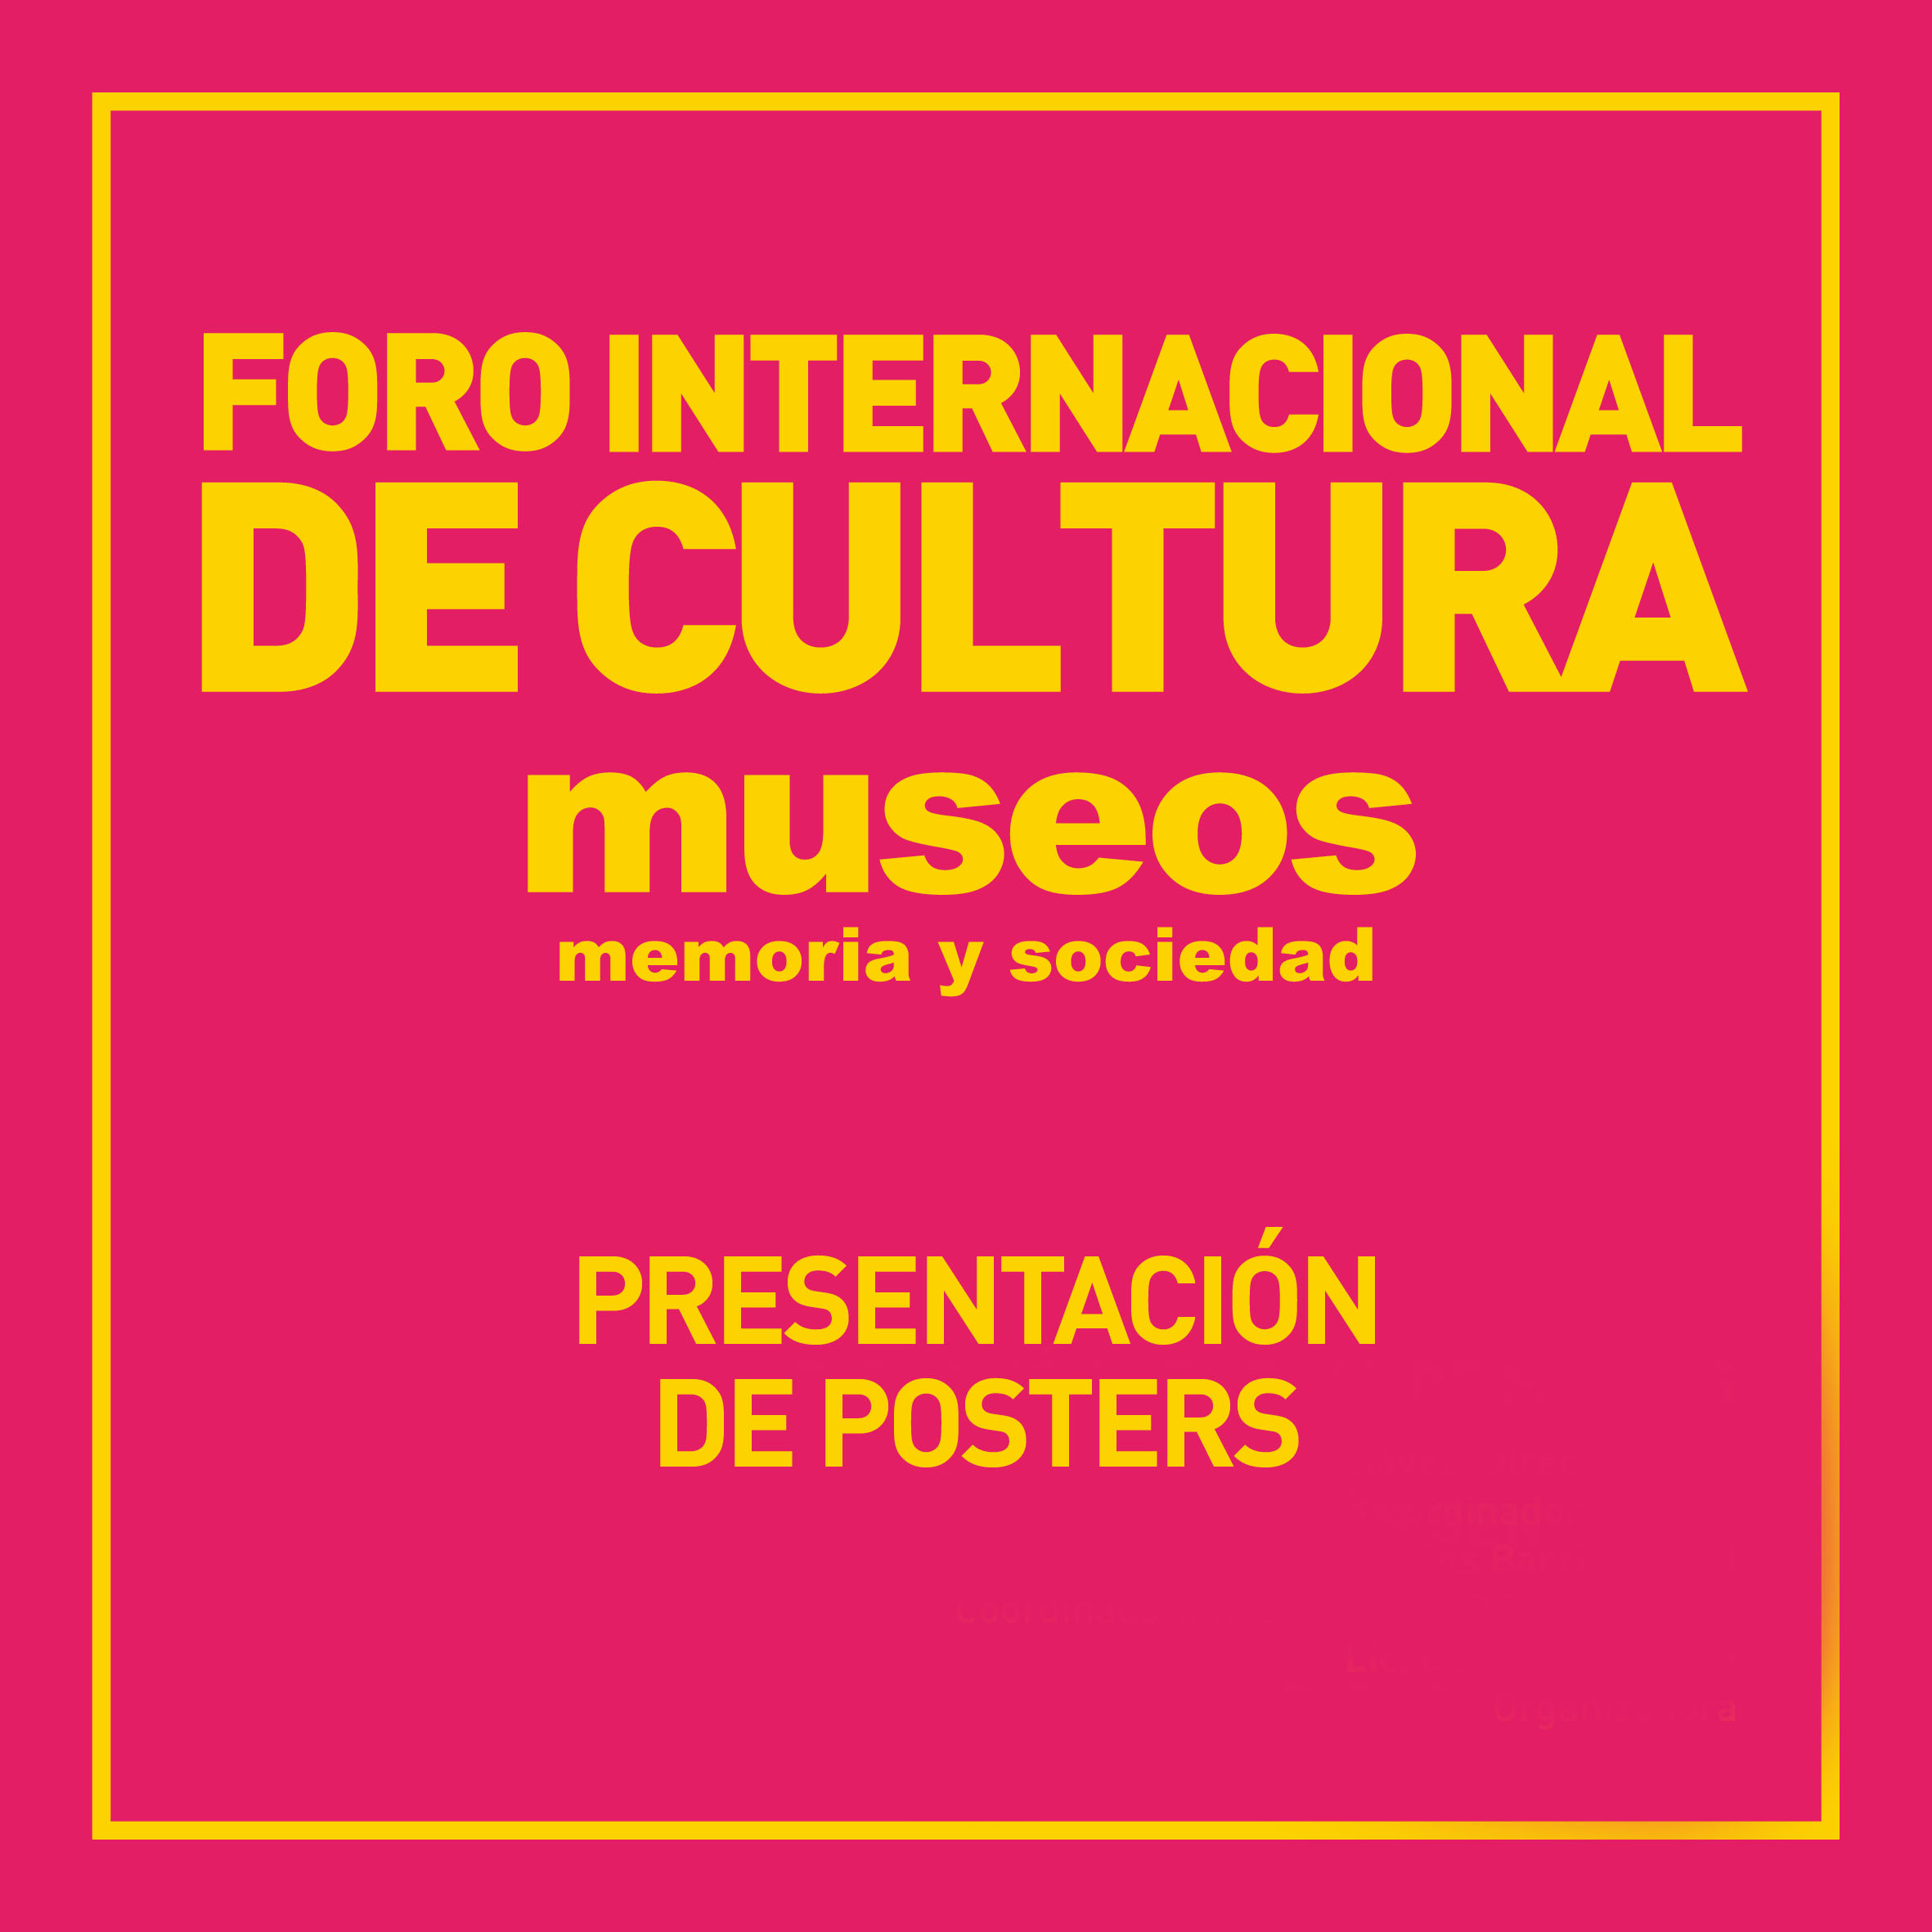 Foro Internacional de Cultura "Museos, memoria y sociedad"